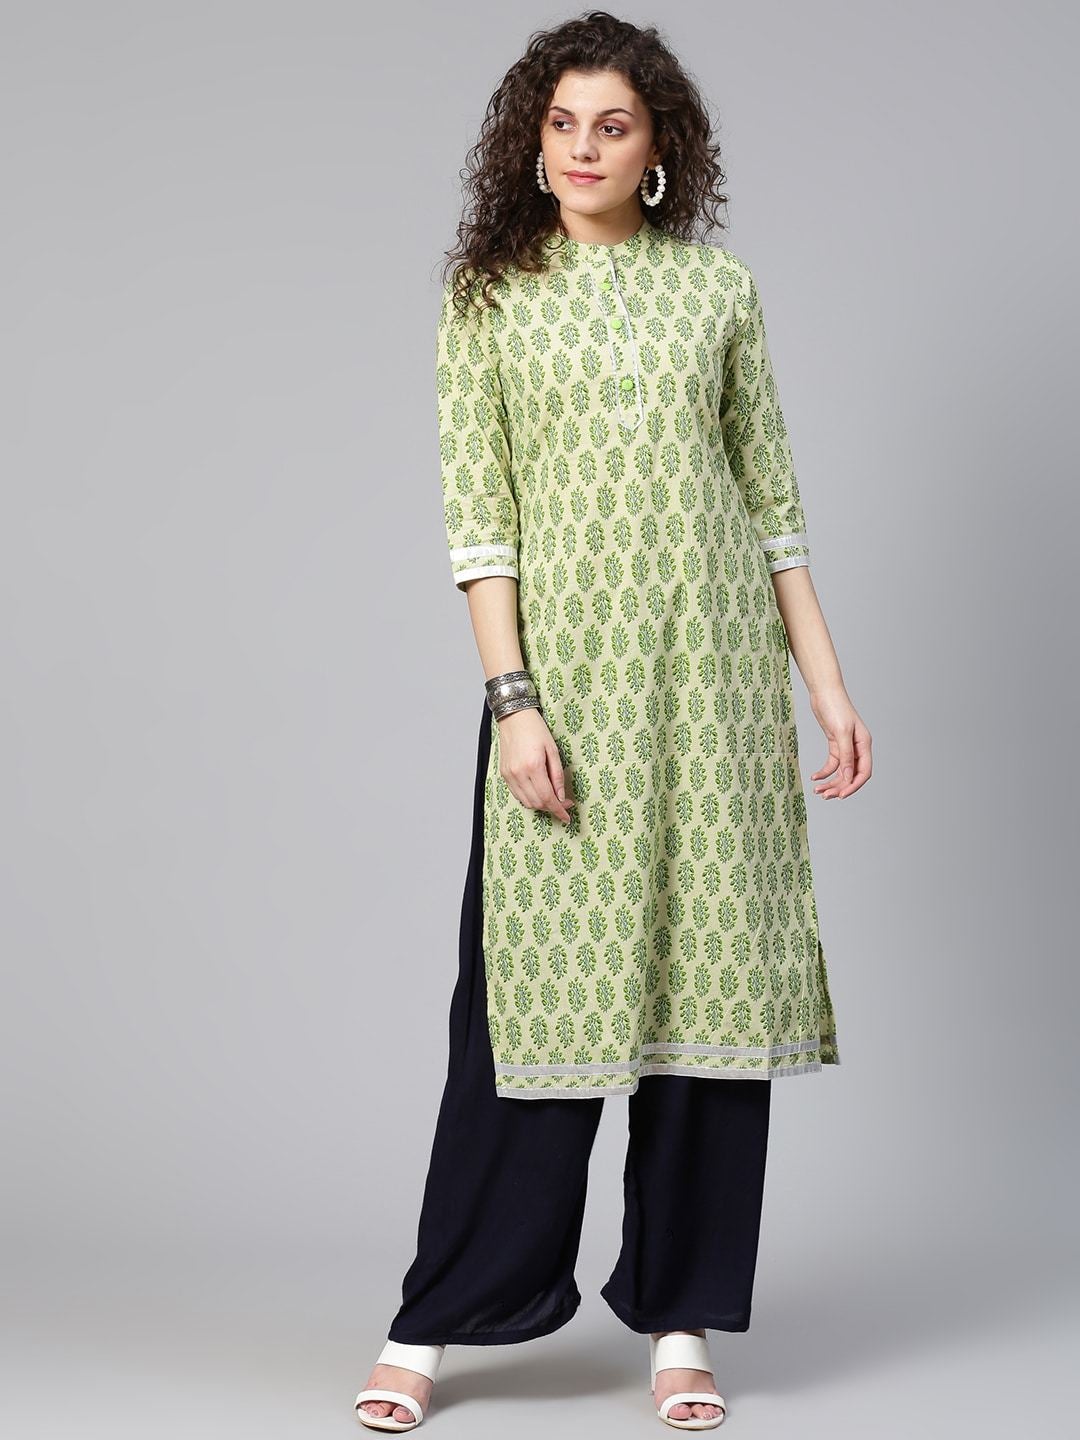 Women's Green Printed Straight Kurta - Meeranshi